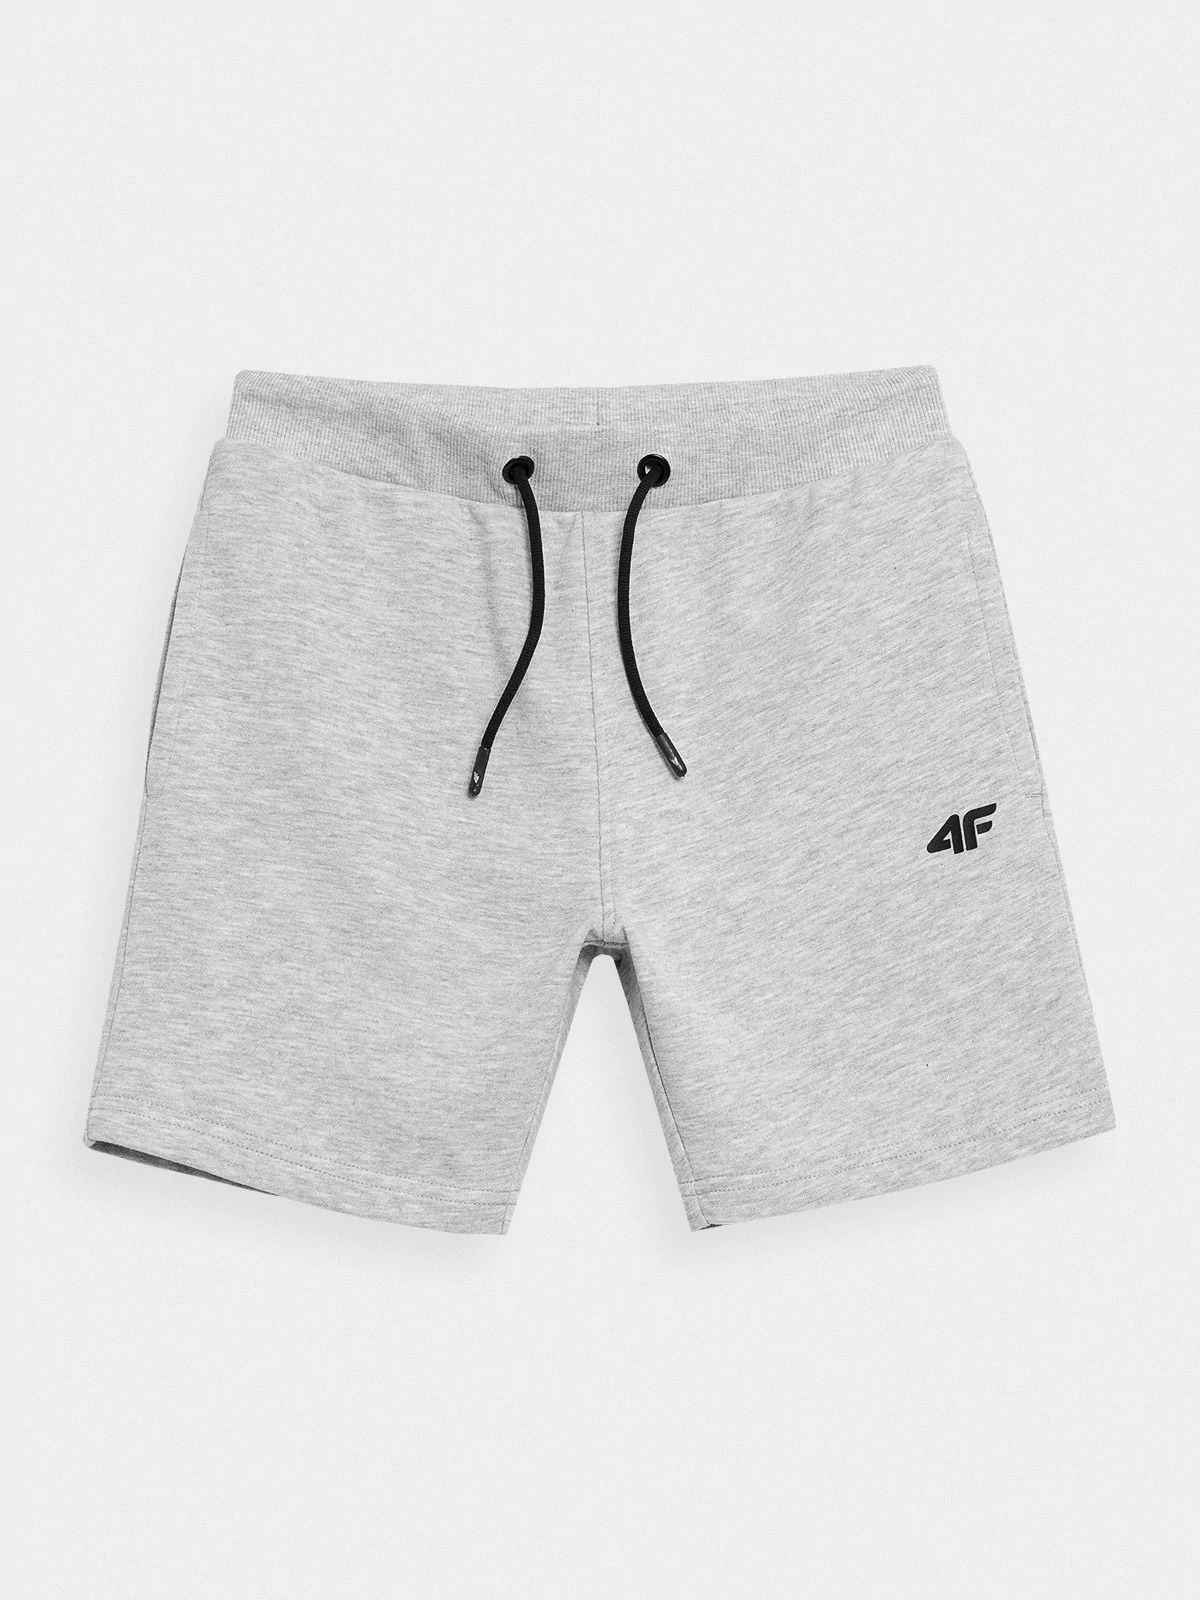 фото Шорты 4f boy's shorts hjz21-jskmd001b-27m цв.серый р. 146